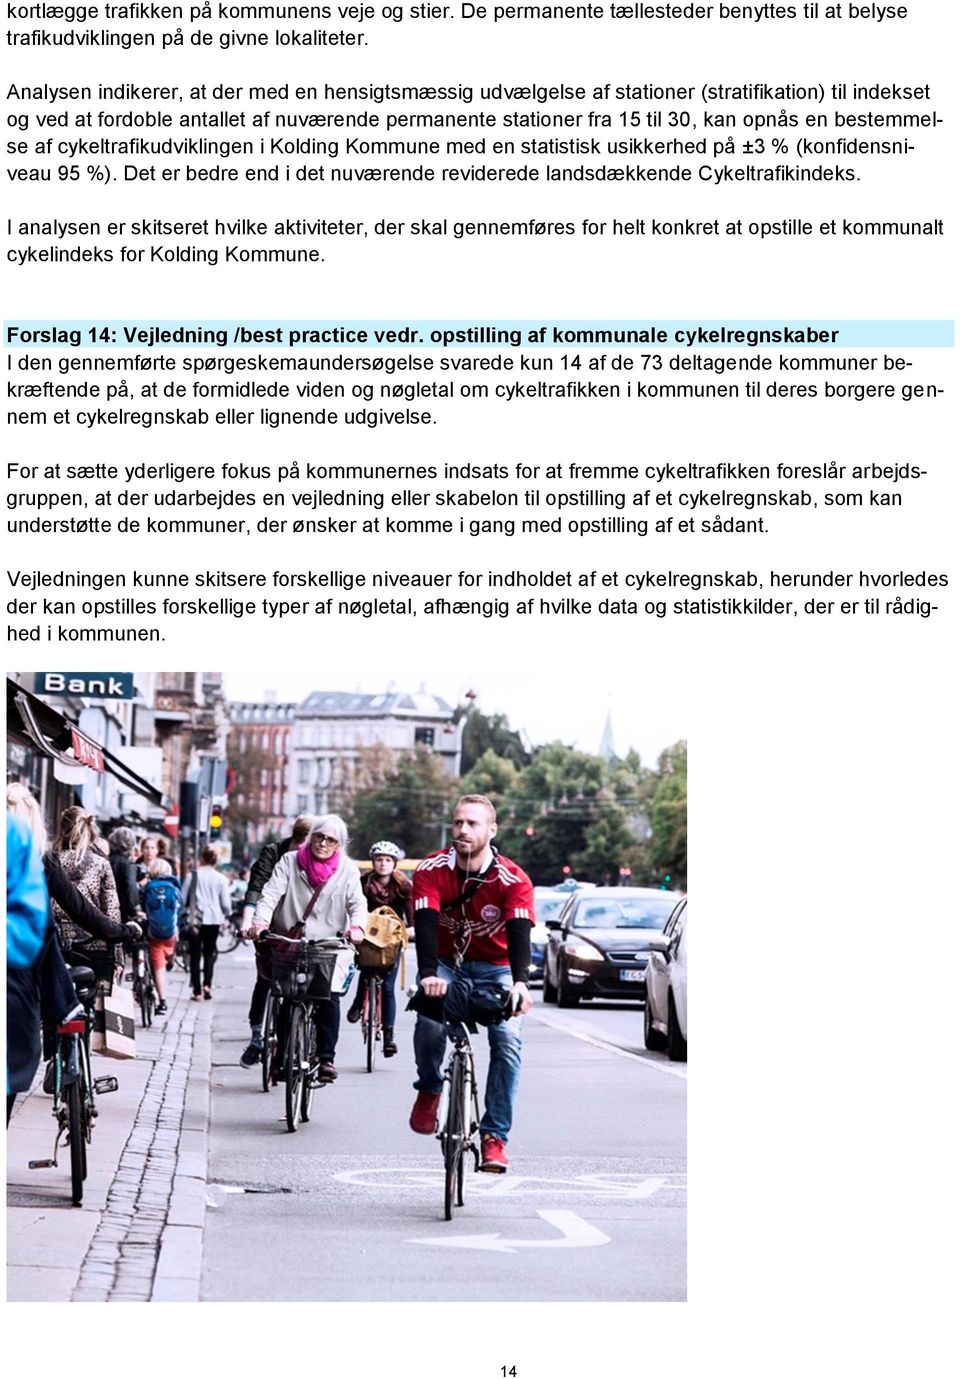 bestemmelse af cykeltrafikudviklingen i Kolding Kommune med en statistisk usikkerhed på ±3 % (konfidensniveau 95 %). Det er bedre end i det nuværende reviderede landsdækkende Cykeltrafikindeks.